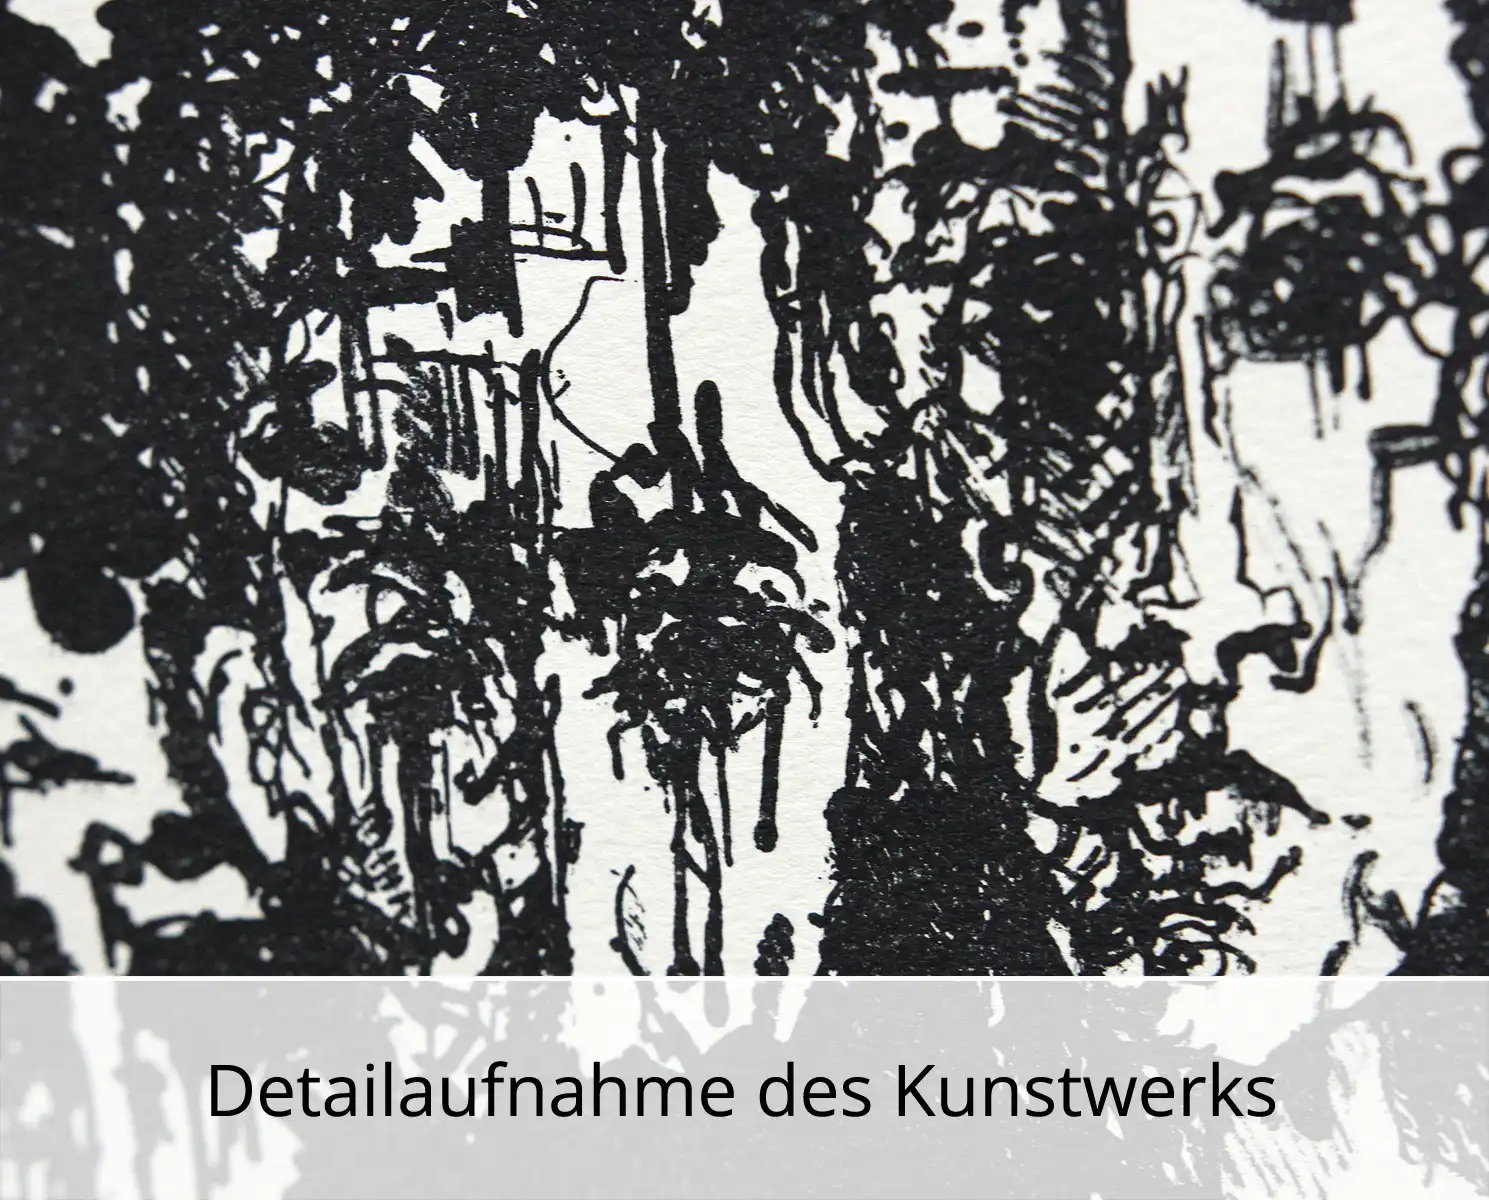 C. Blechschmidt: "13 und einer", Originale Grafik/Lithographie